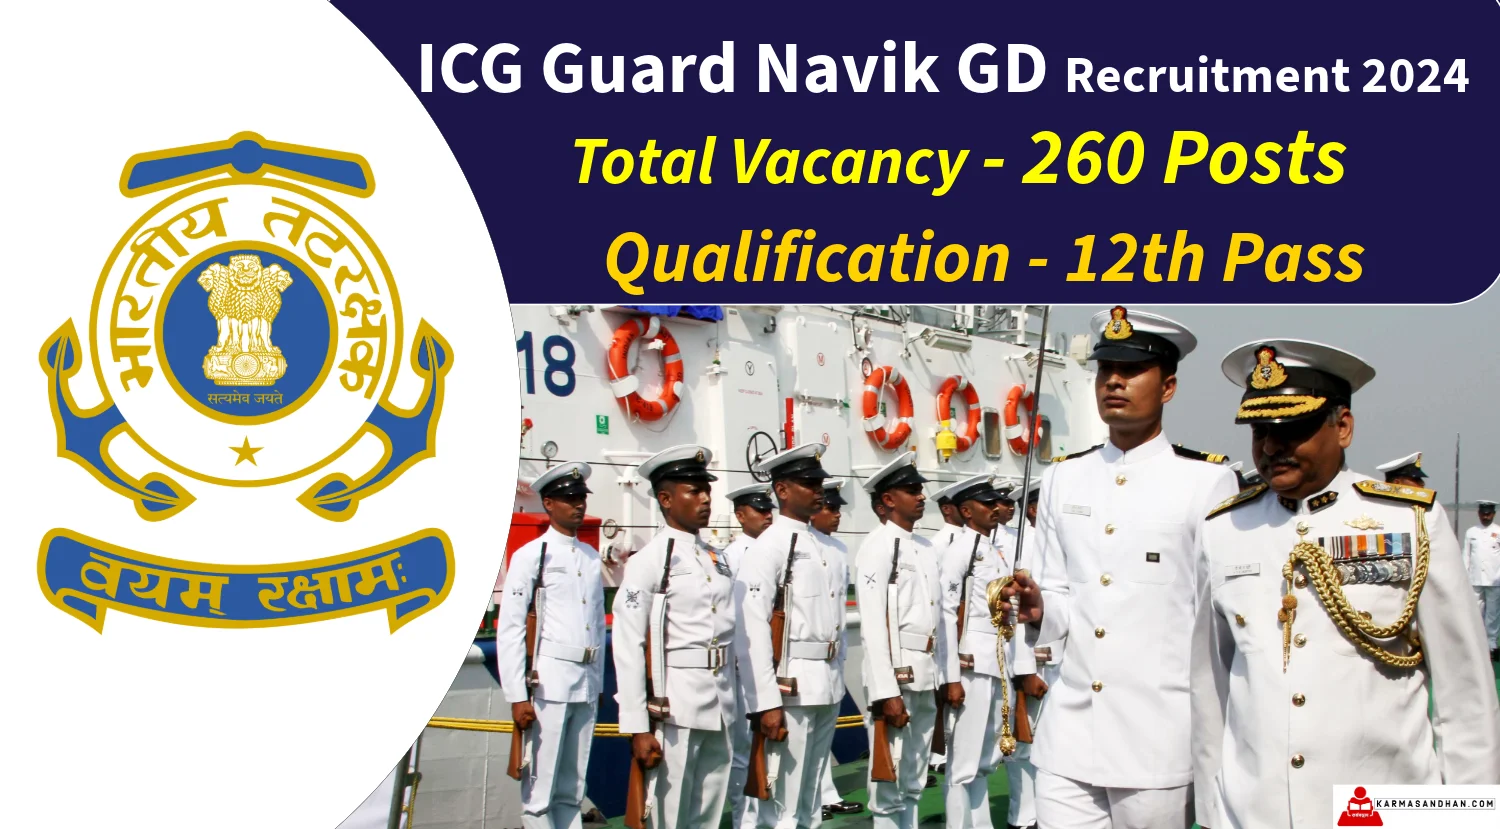 ICG Navik GD Recruitment 2024 Application Begins Today